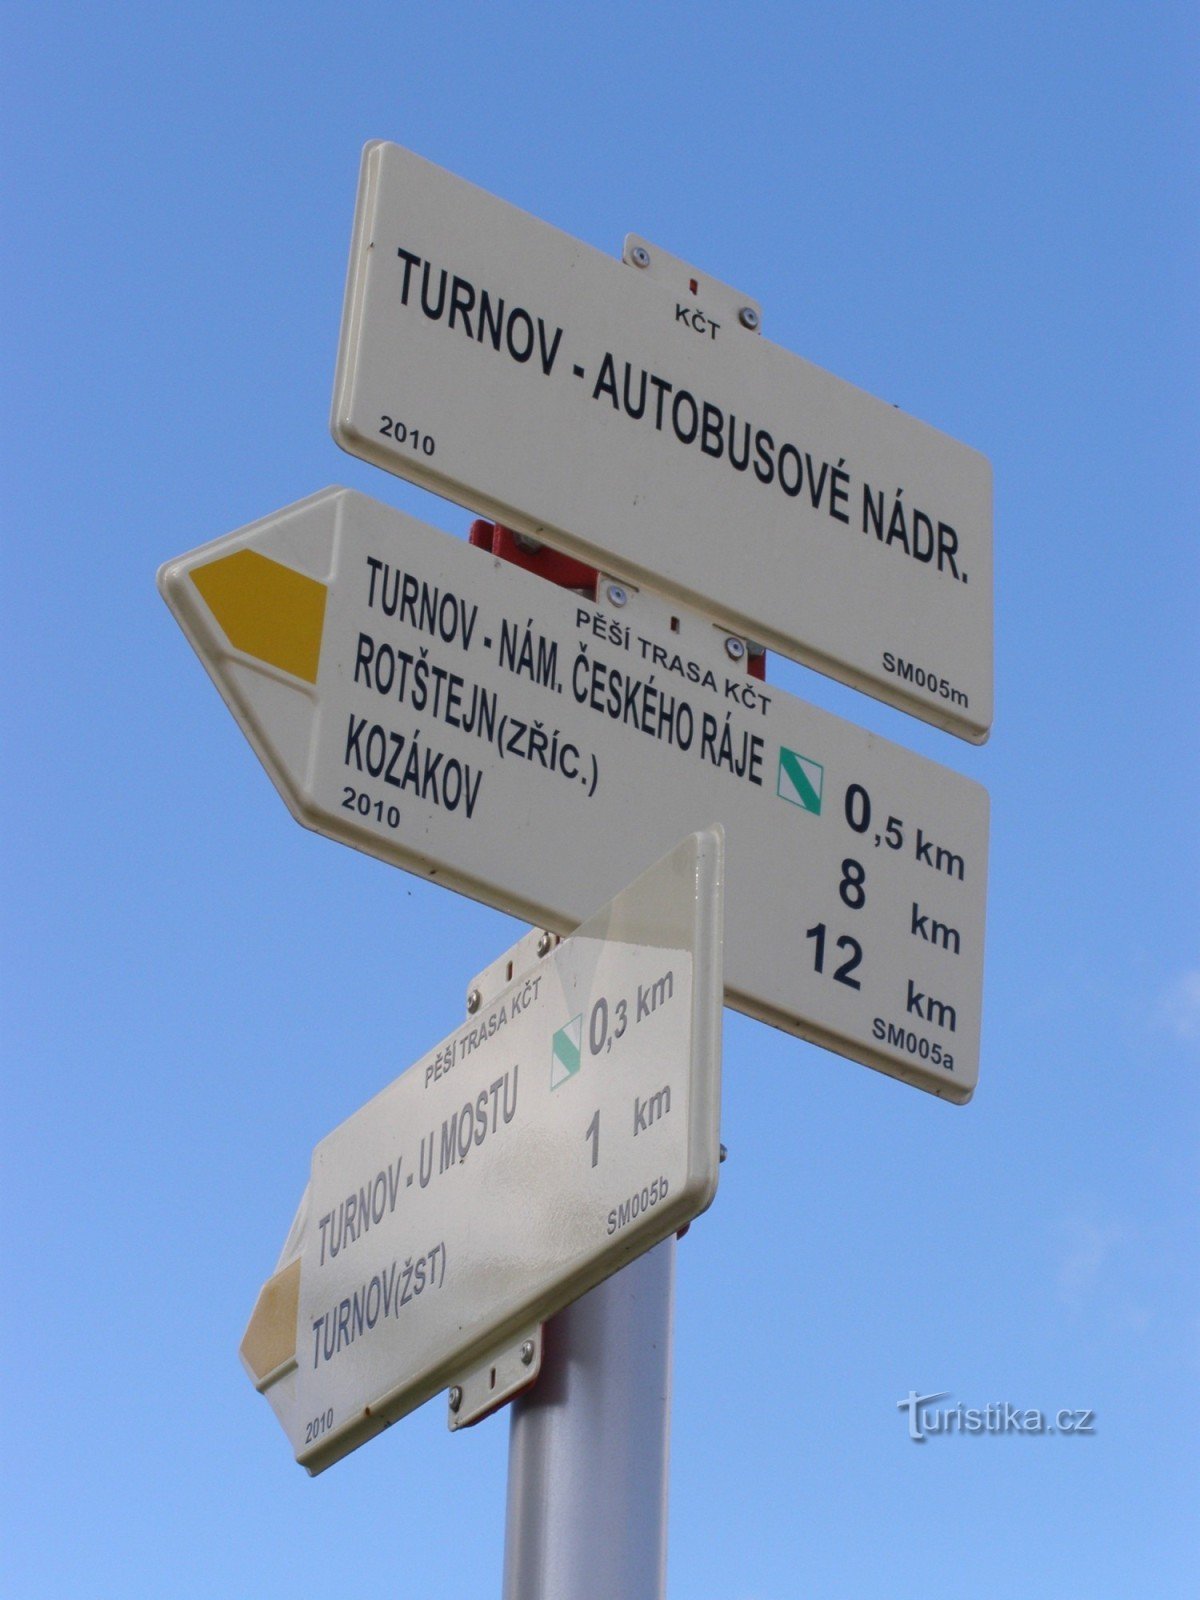 skrzyżowanie turystyczne Turnov - dworzec autobusowy